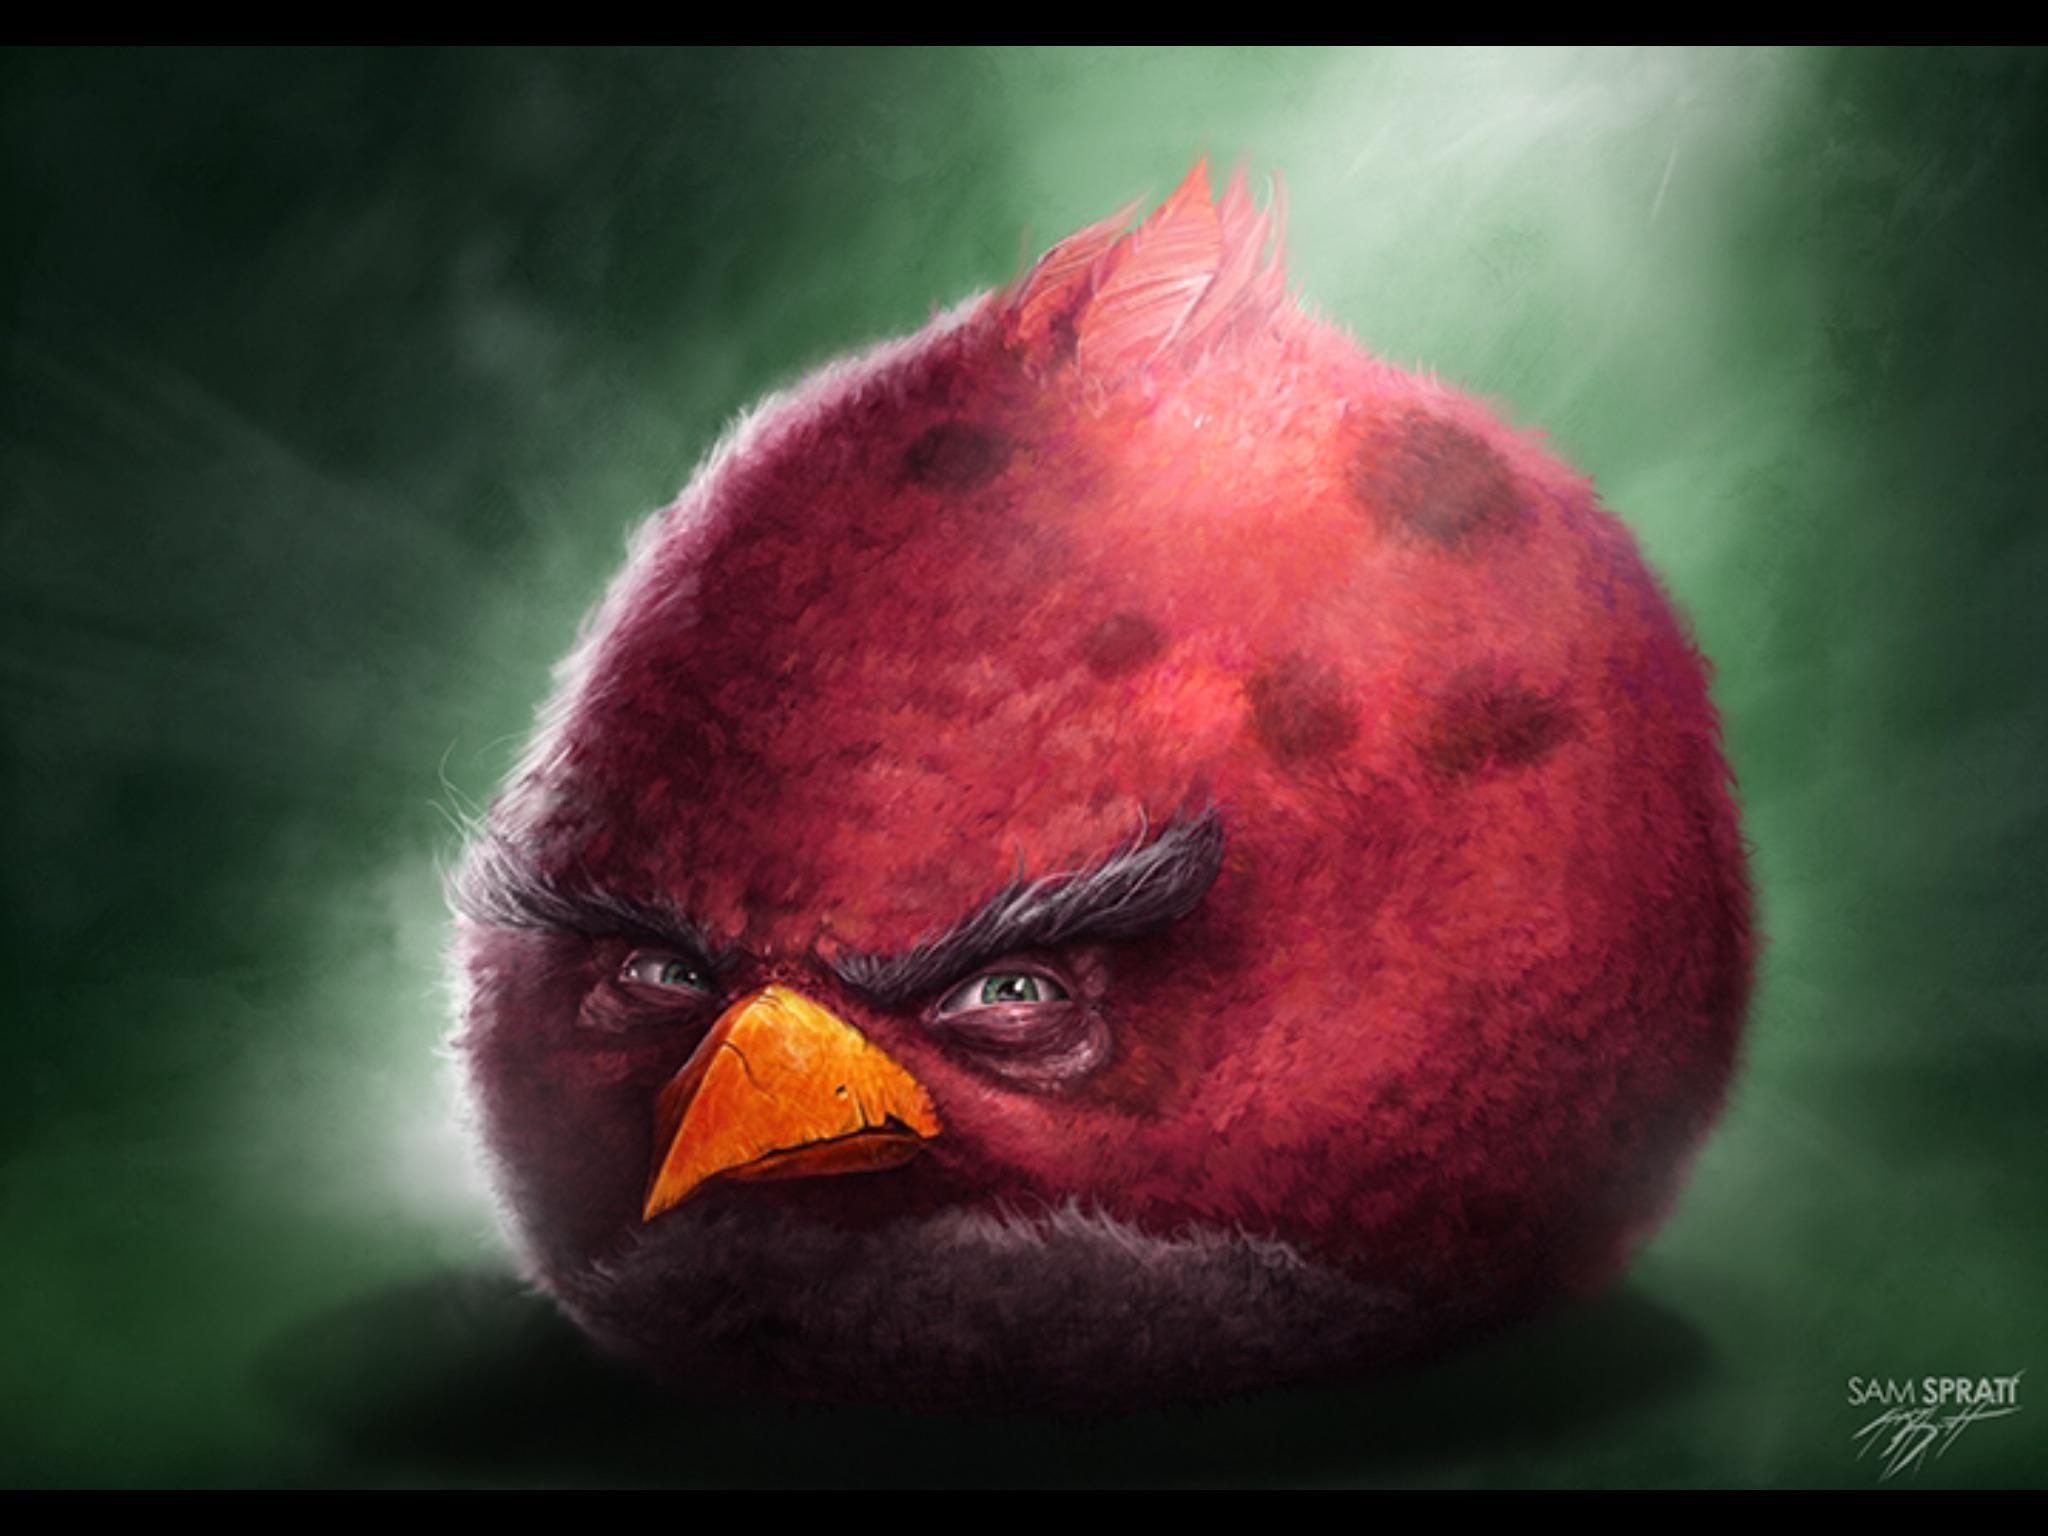 angry pigeon meme